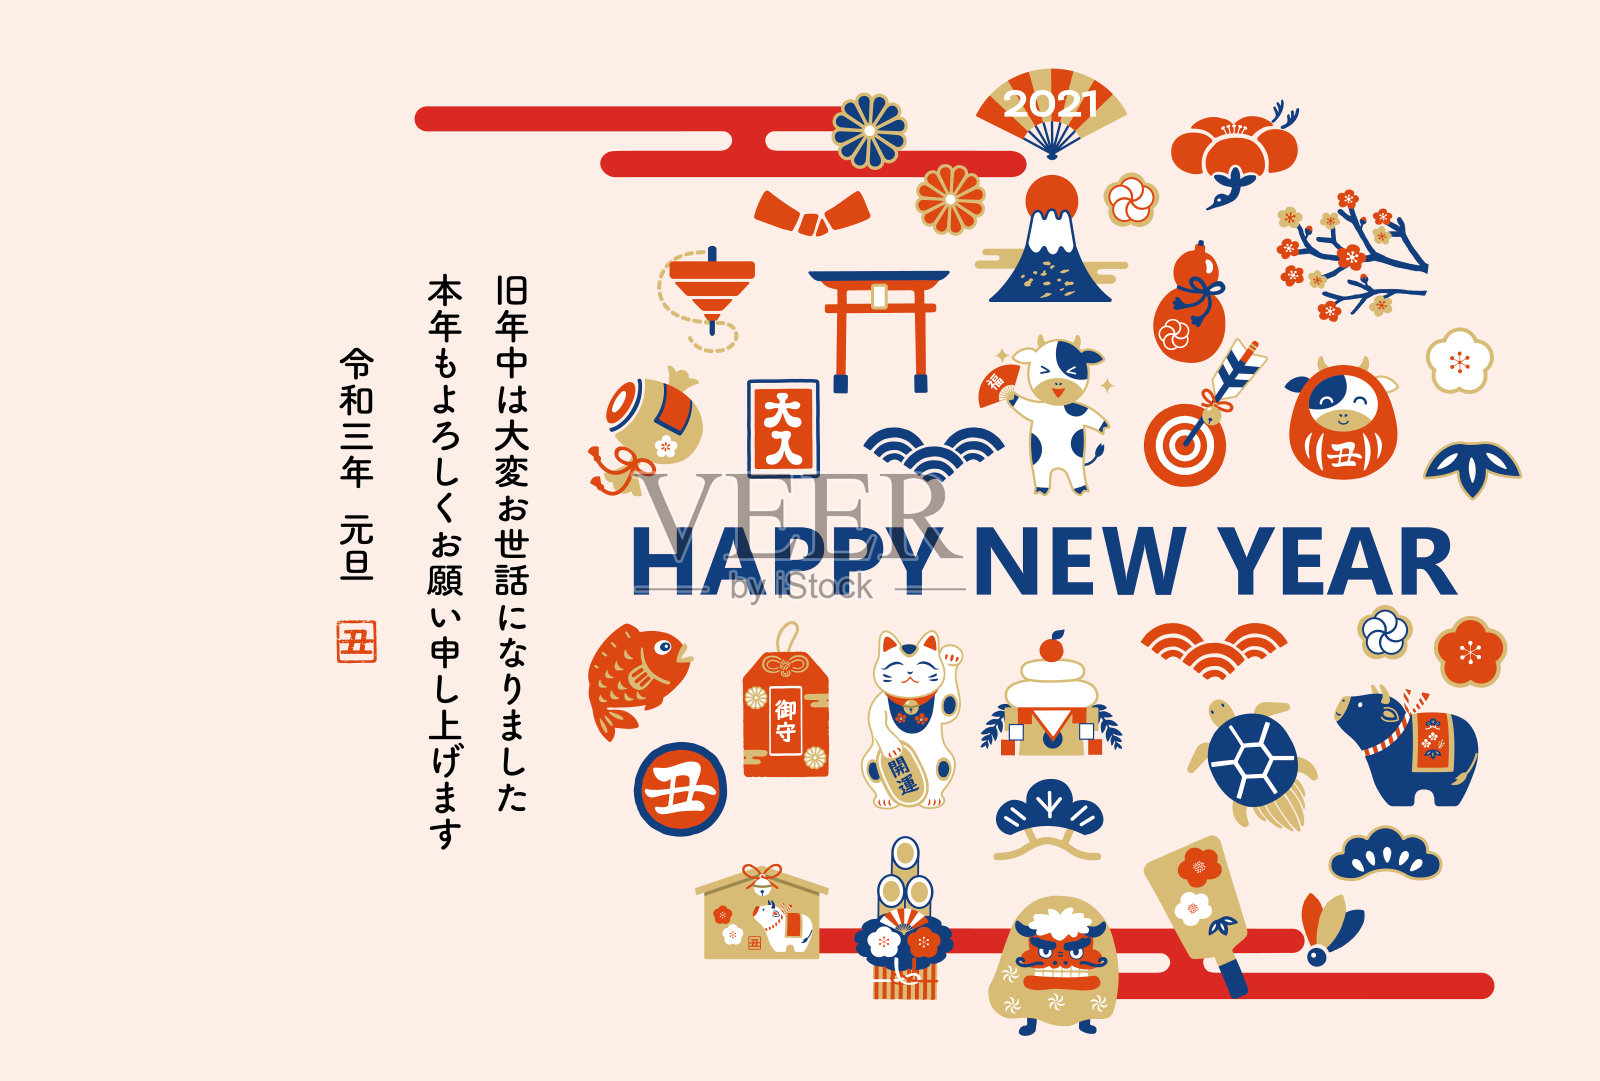 新年贺卡明信片日本风格的2021年插画图片素材